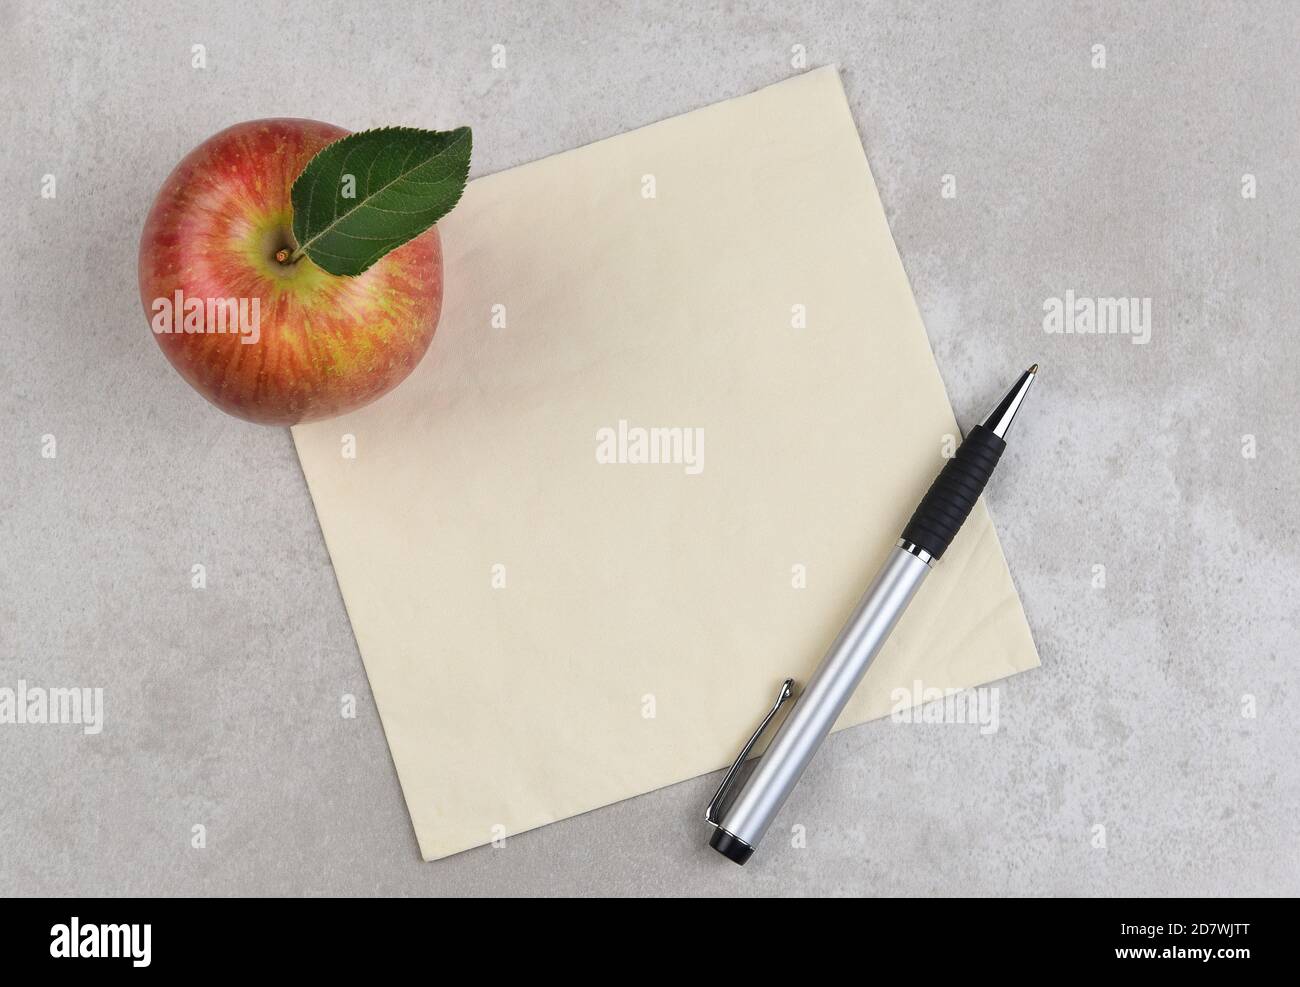 Apfel, Feder und Serviette auf grau melierter Oberfläche. Platz für Kopie oder Doodle auf der Serviette. Stockfoto